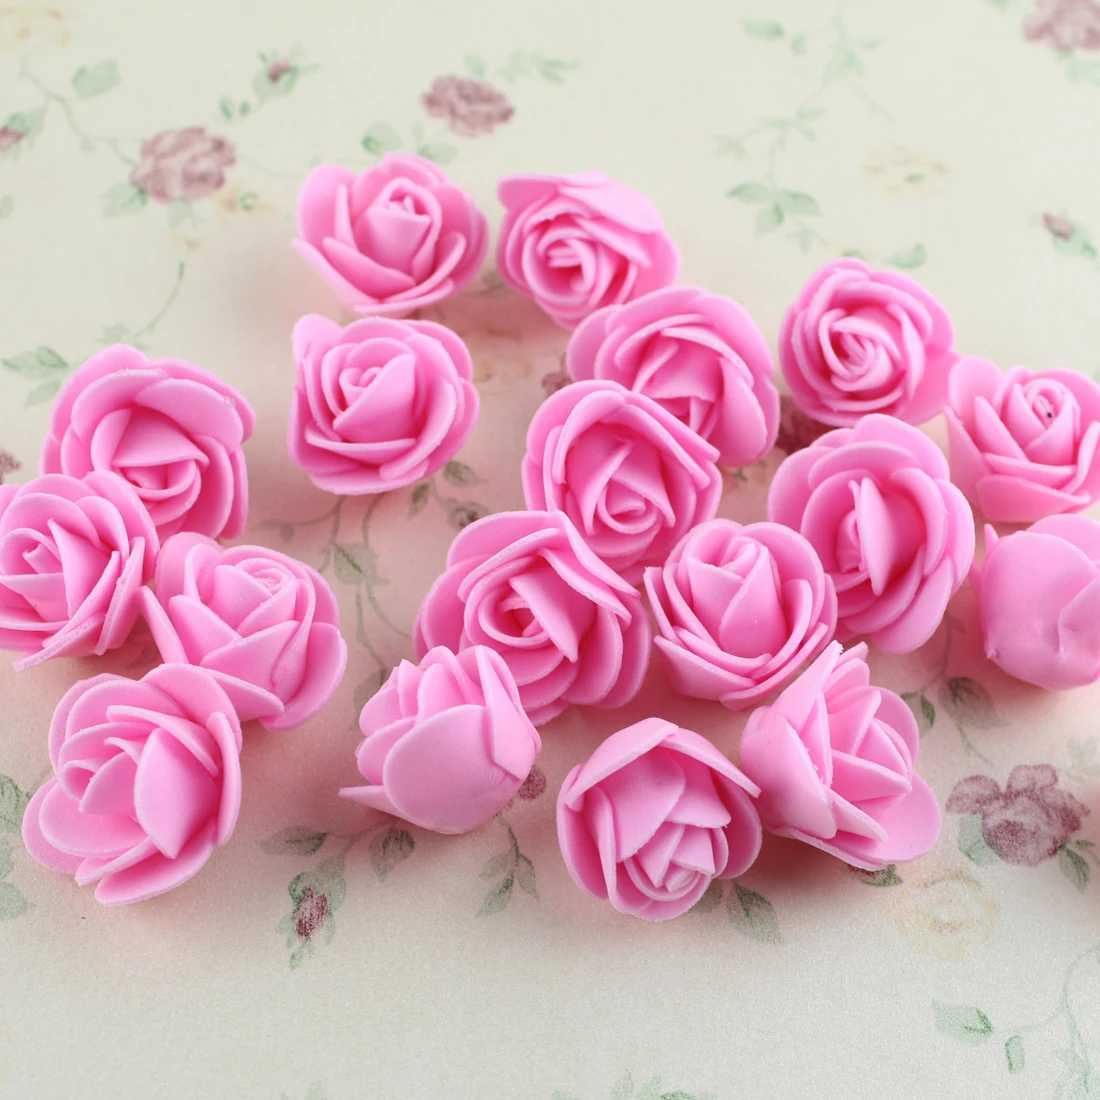 50 шт. мини 4 см искусственные цветы розы искусственные цветы для свадьбы украшение автомобиля помпон для гирлянды «сделай сам» декоративный День святого Валентина